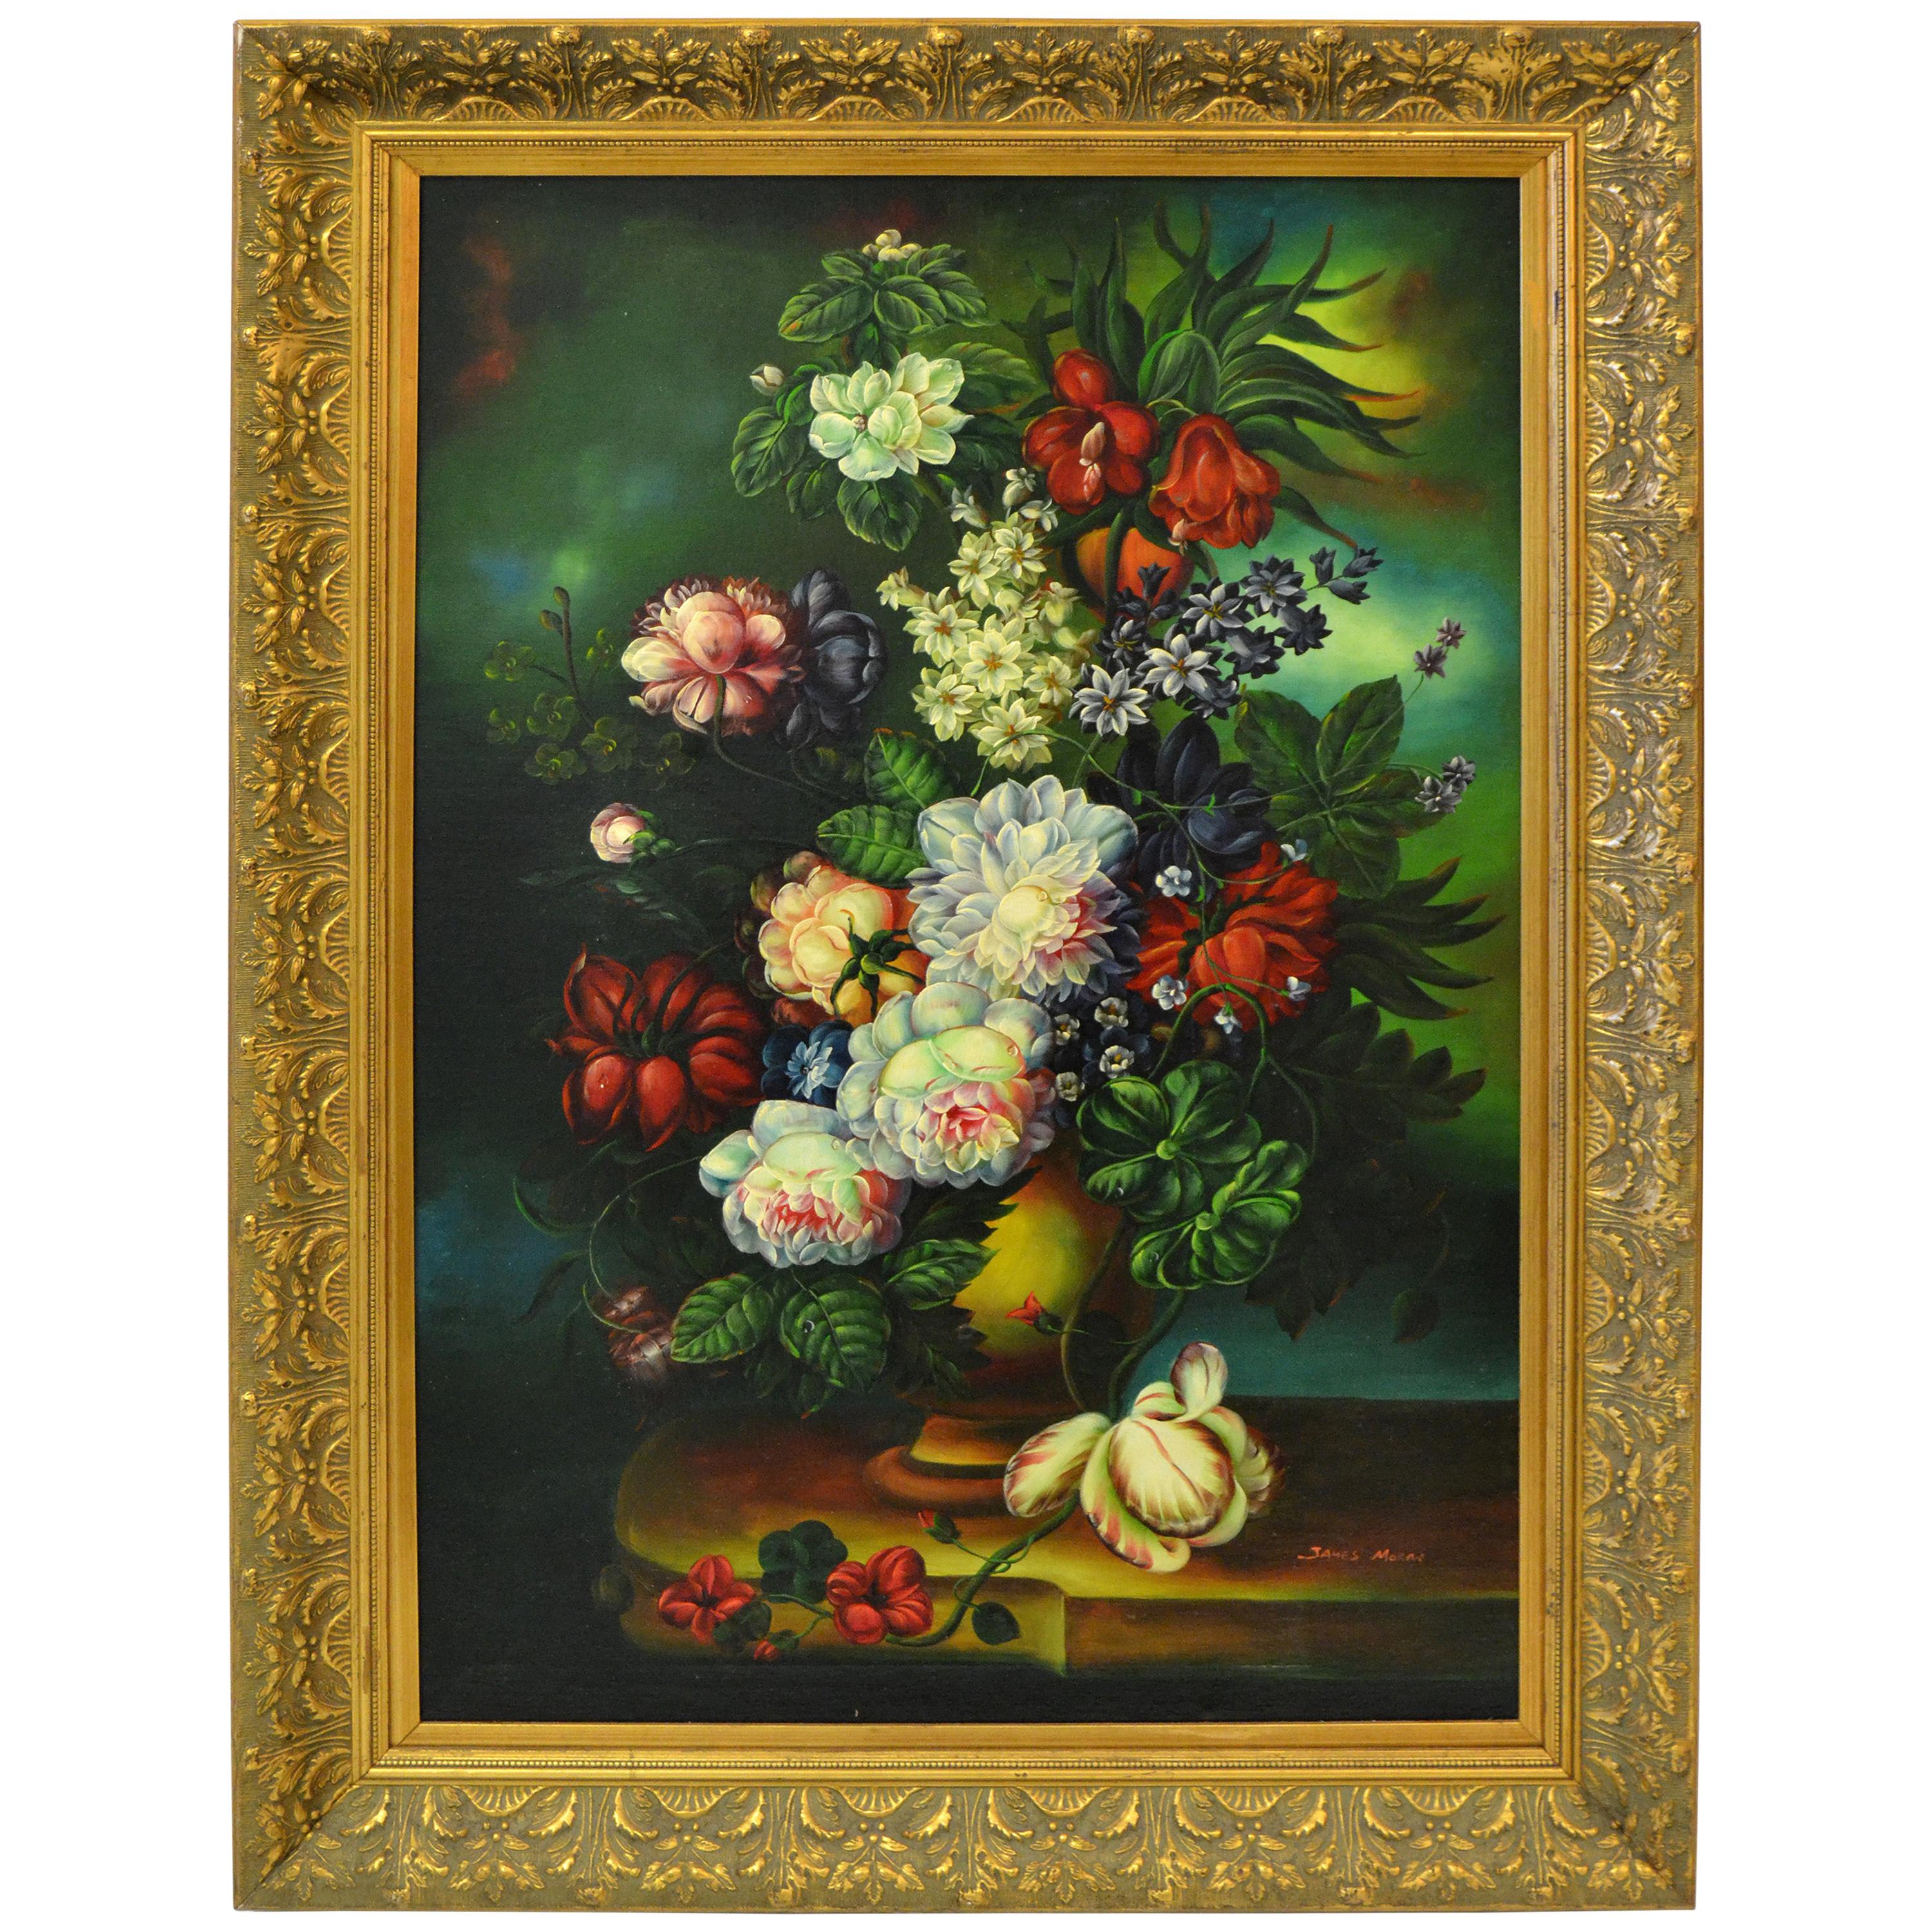 Ornate Gilt Framed Oil Painting Floral Bouquet Still Life Signed James Moran